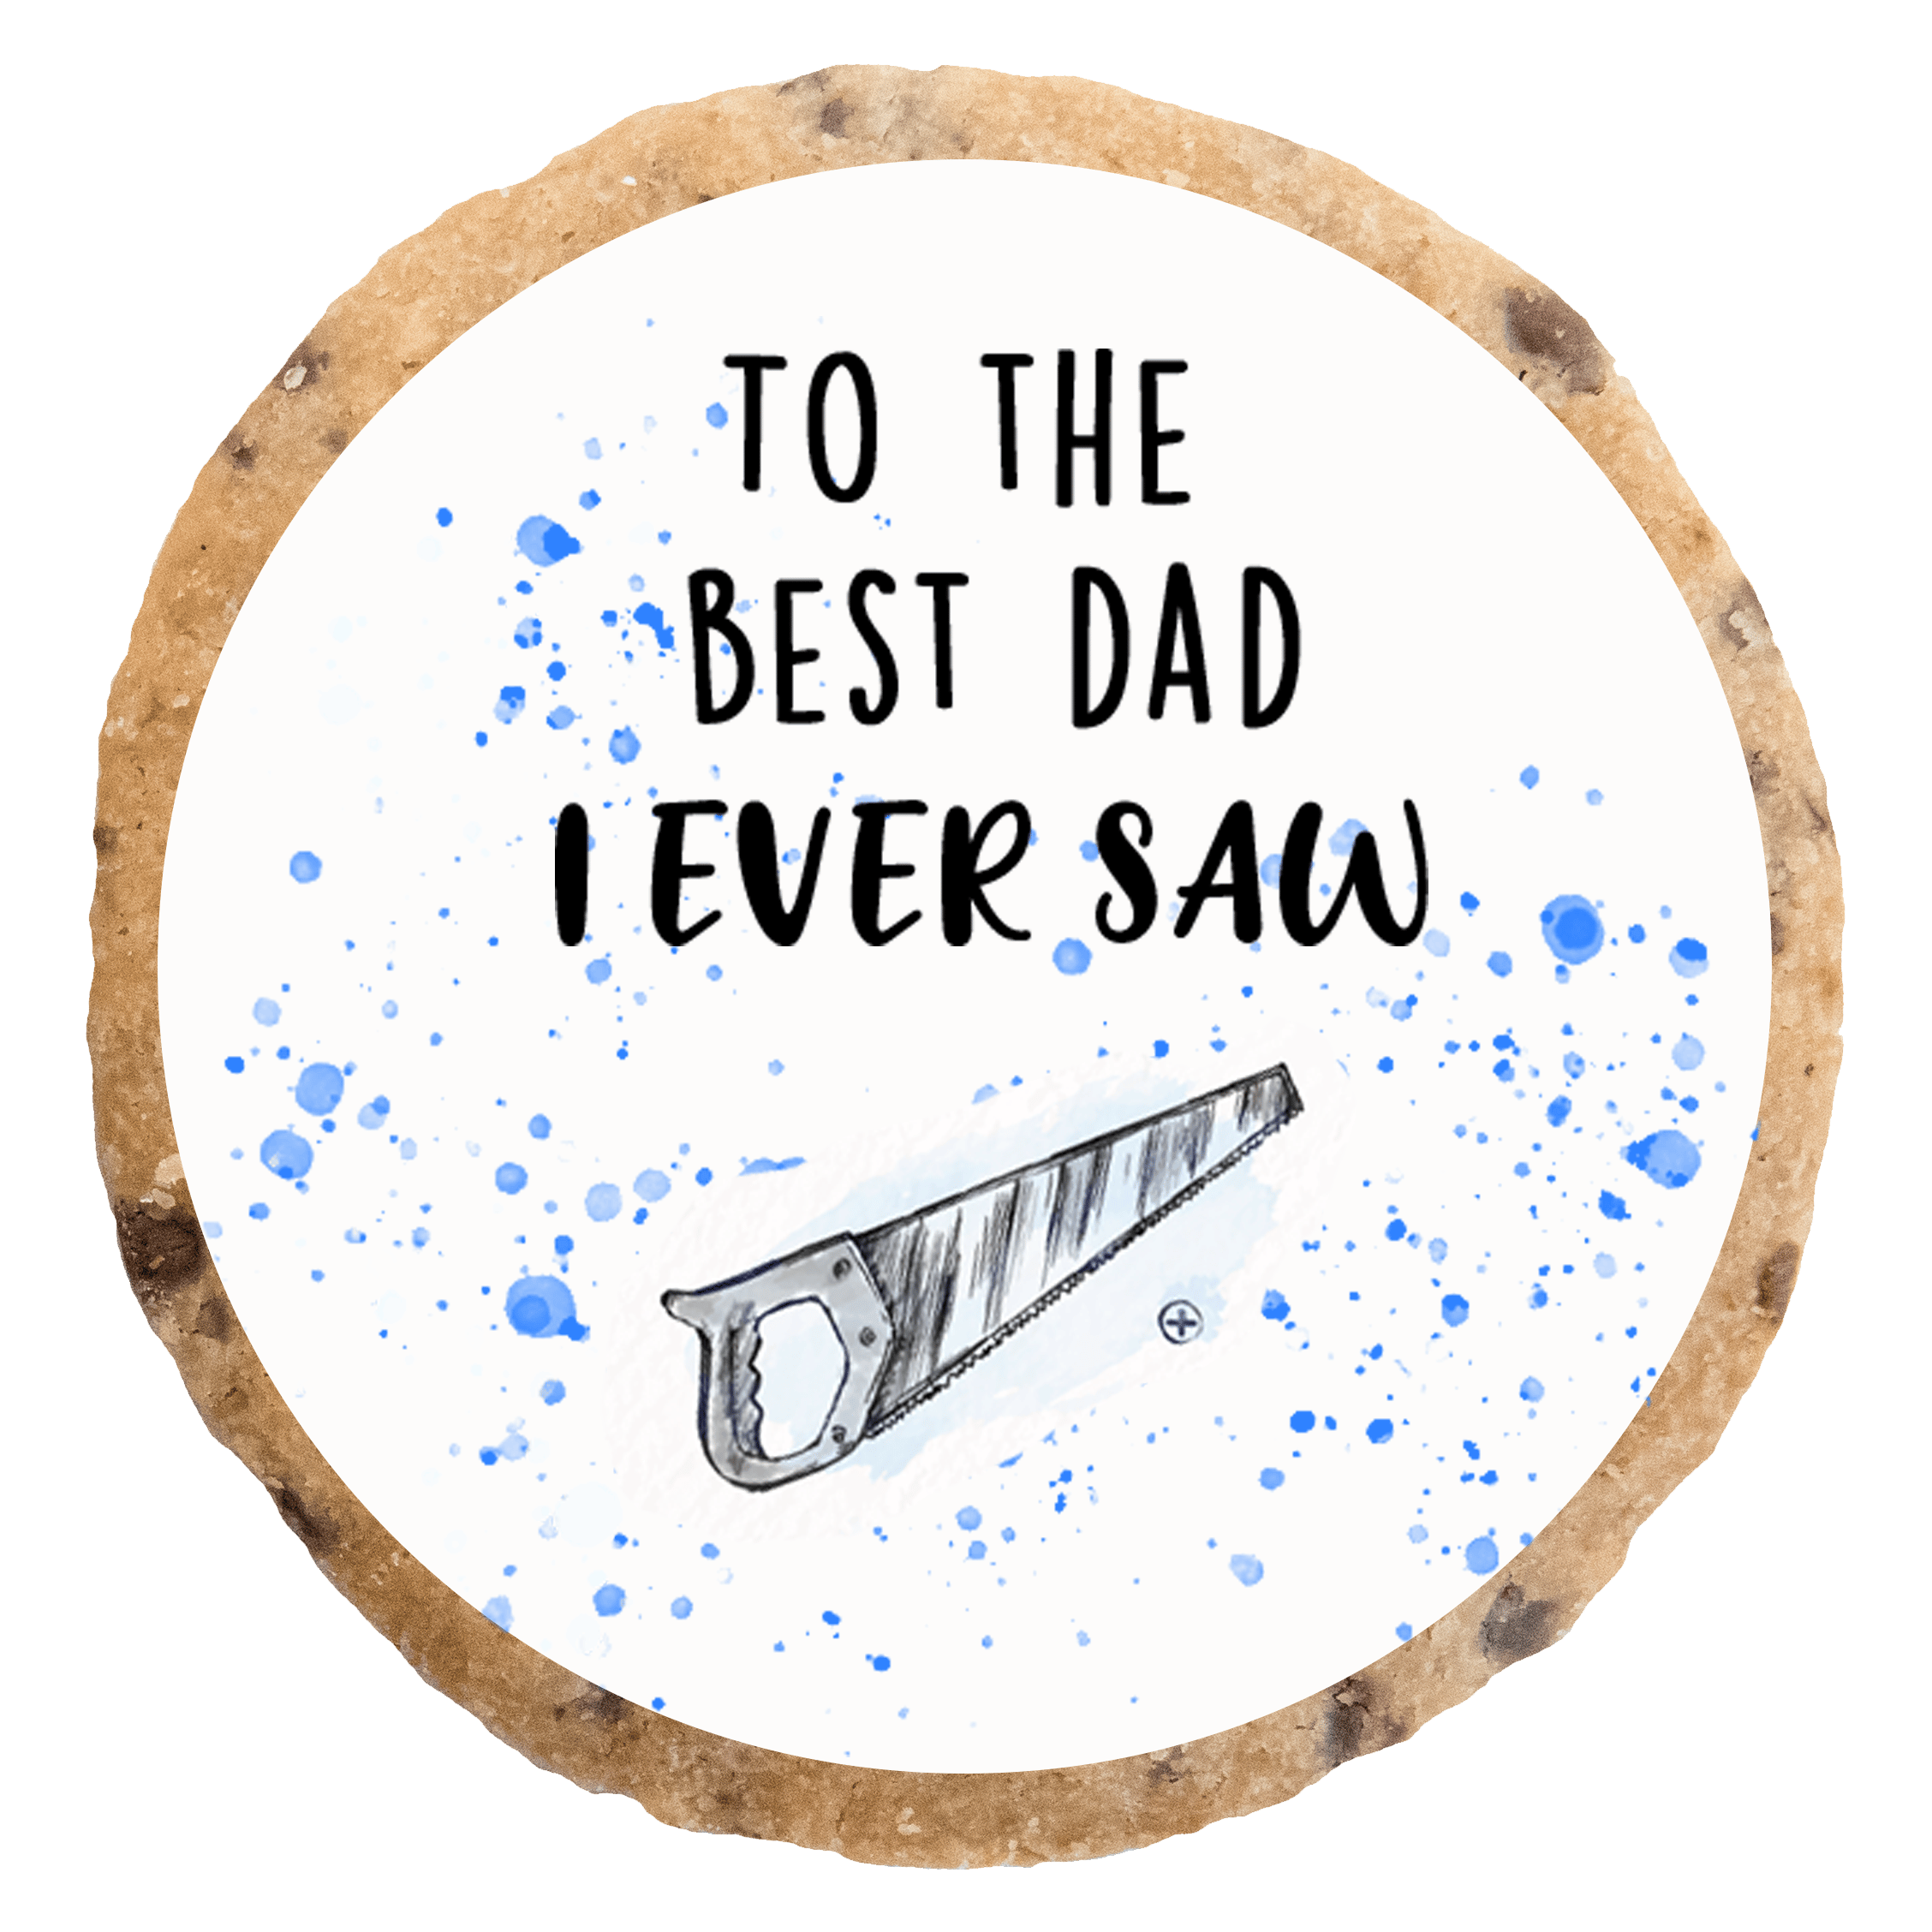 "The best dad I ever saw" MotivKEKS